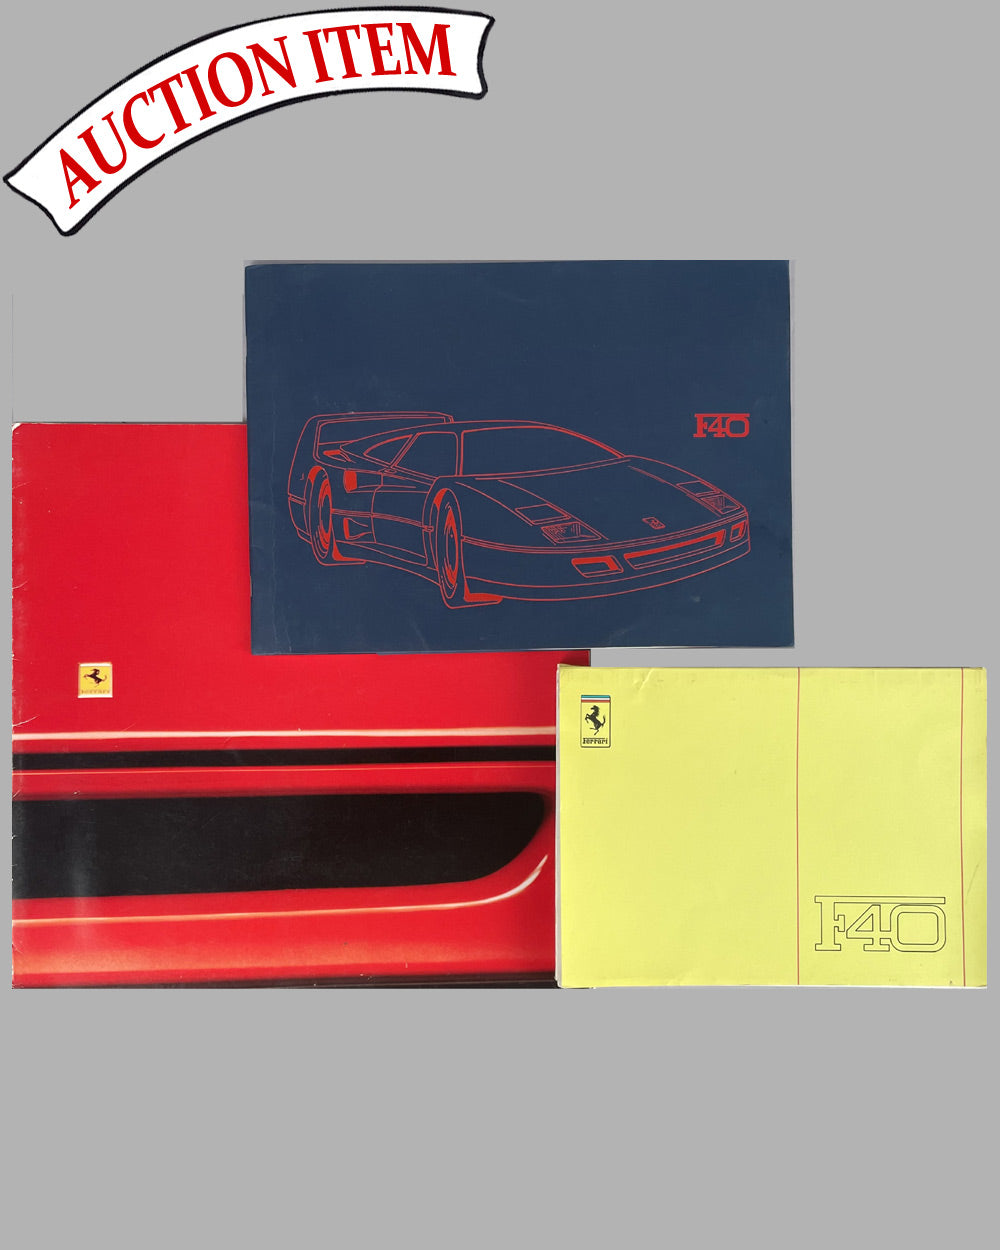 Three Ferrari F40 factory publications